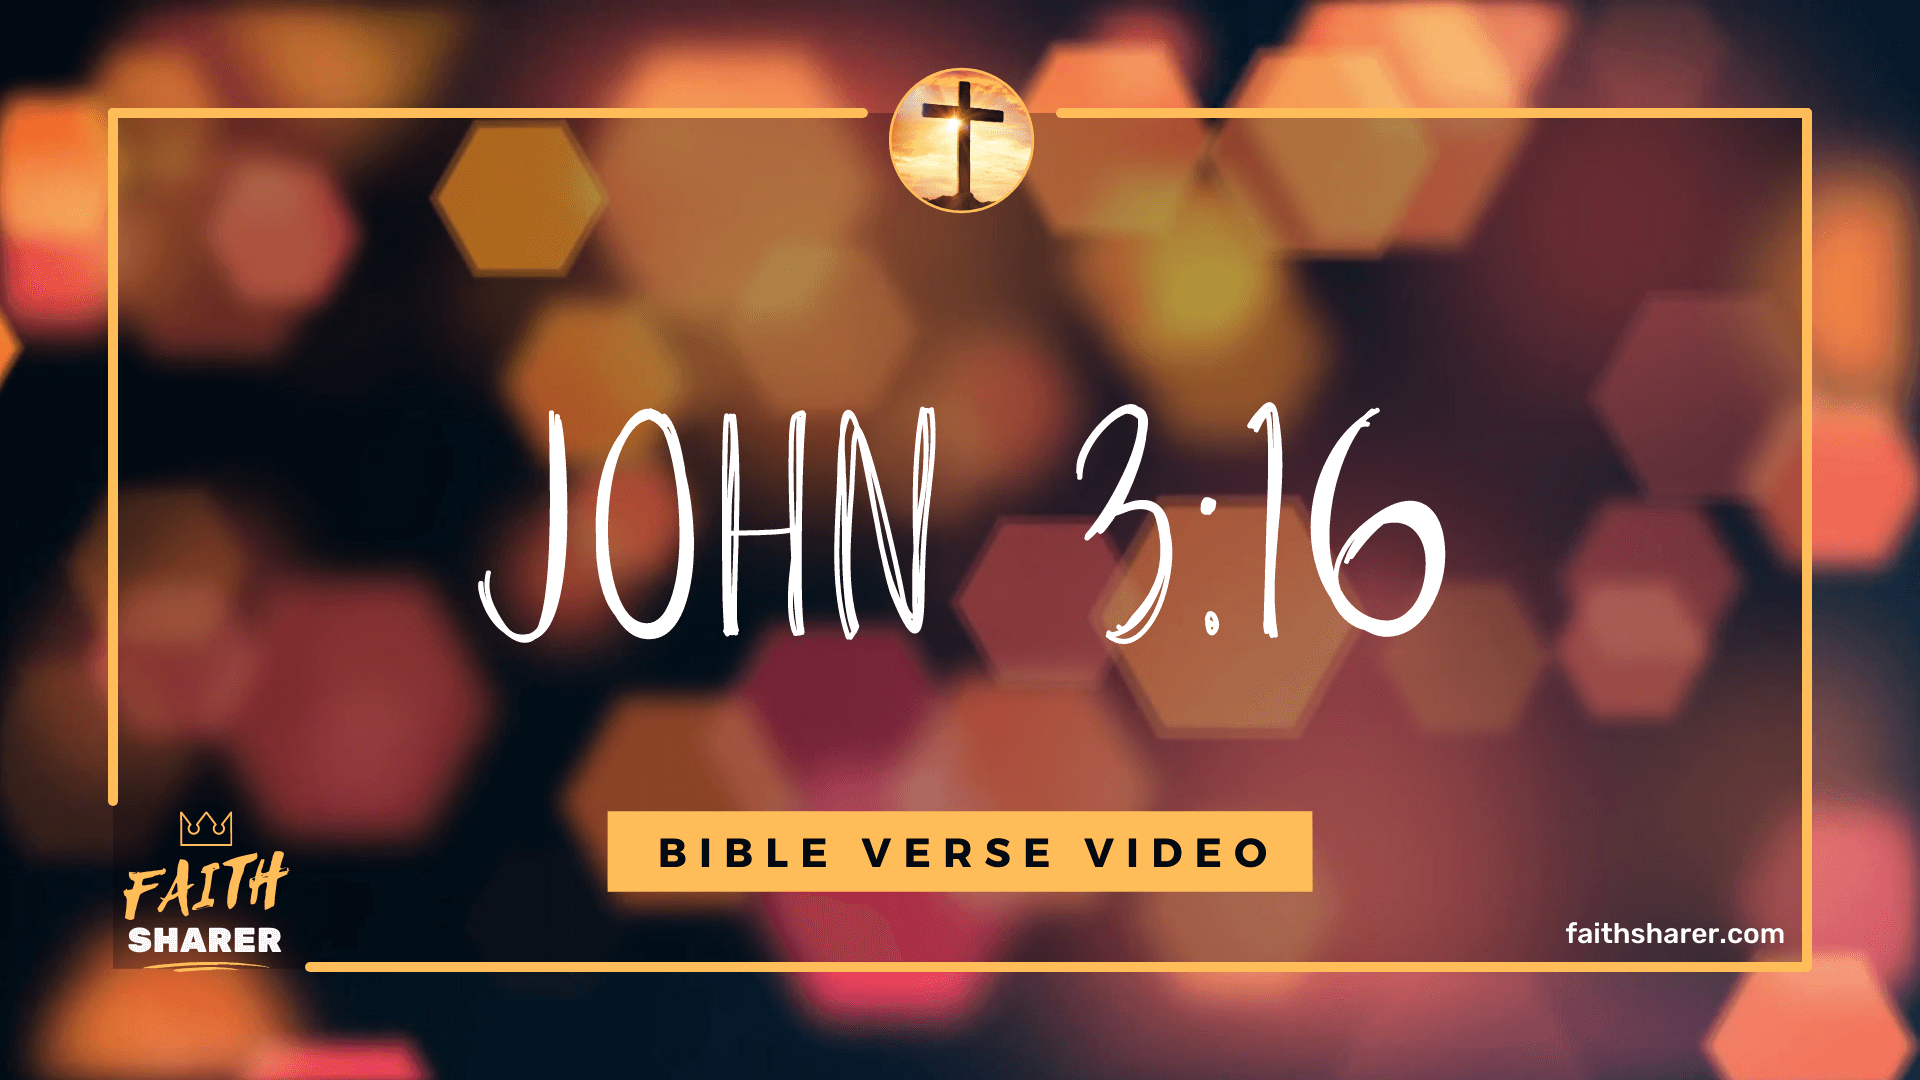 John 3 16 Video | Bible Verse Video John 3:16 - Faith Sharer